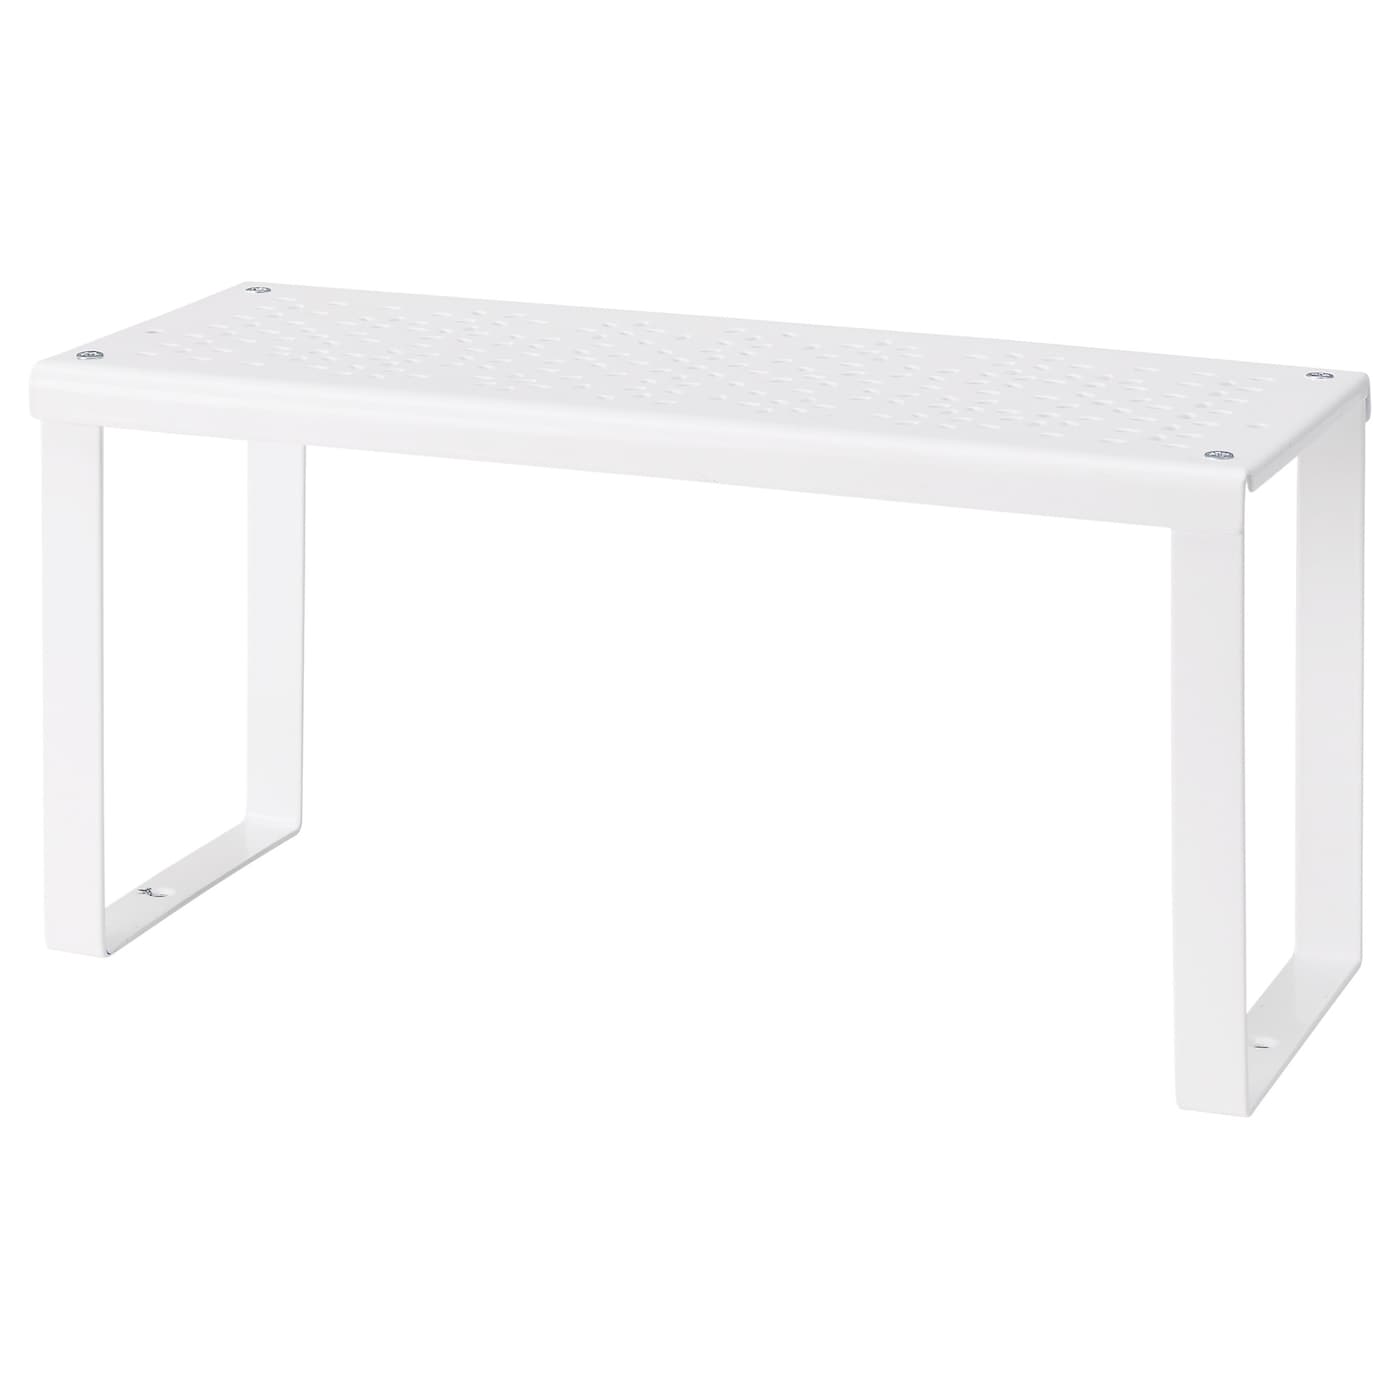 Органайзер для интерьера - VARIERA  IKEA/ ВАРЬЕРА ИКЕА, 32x13x16 см, белый